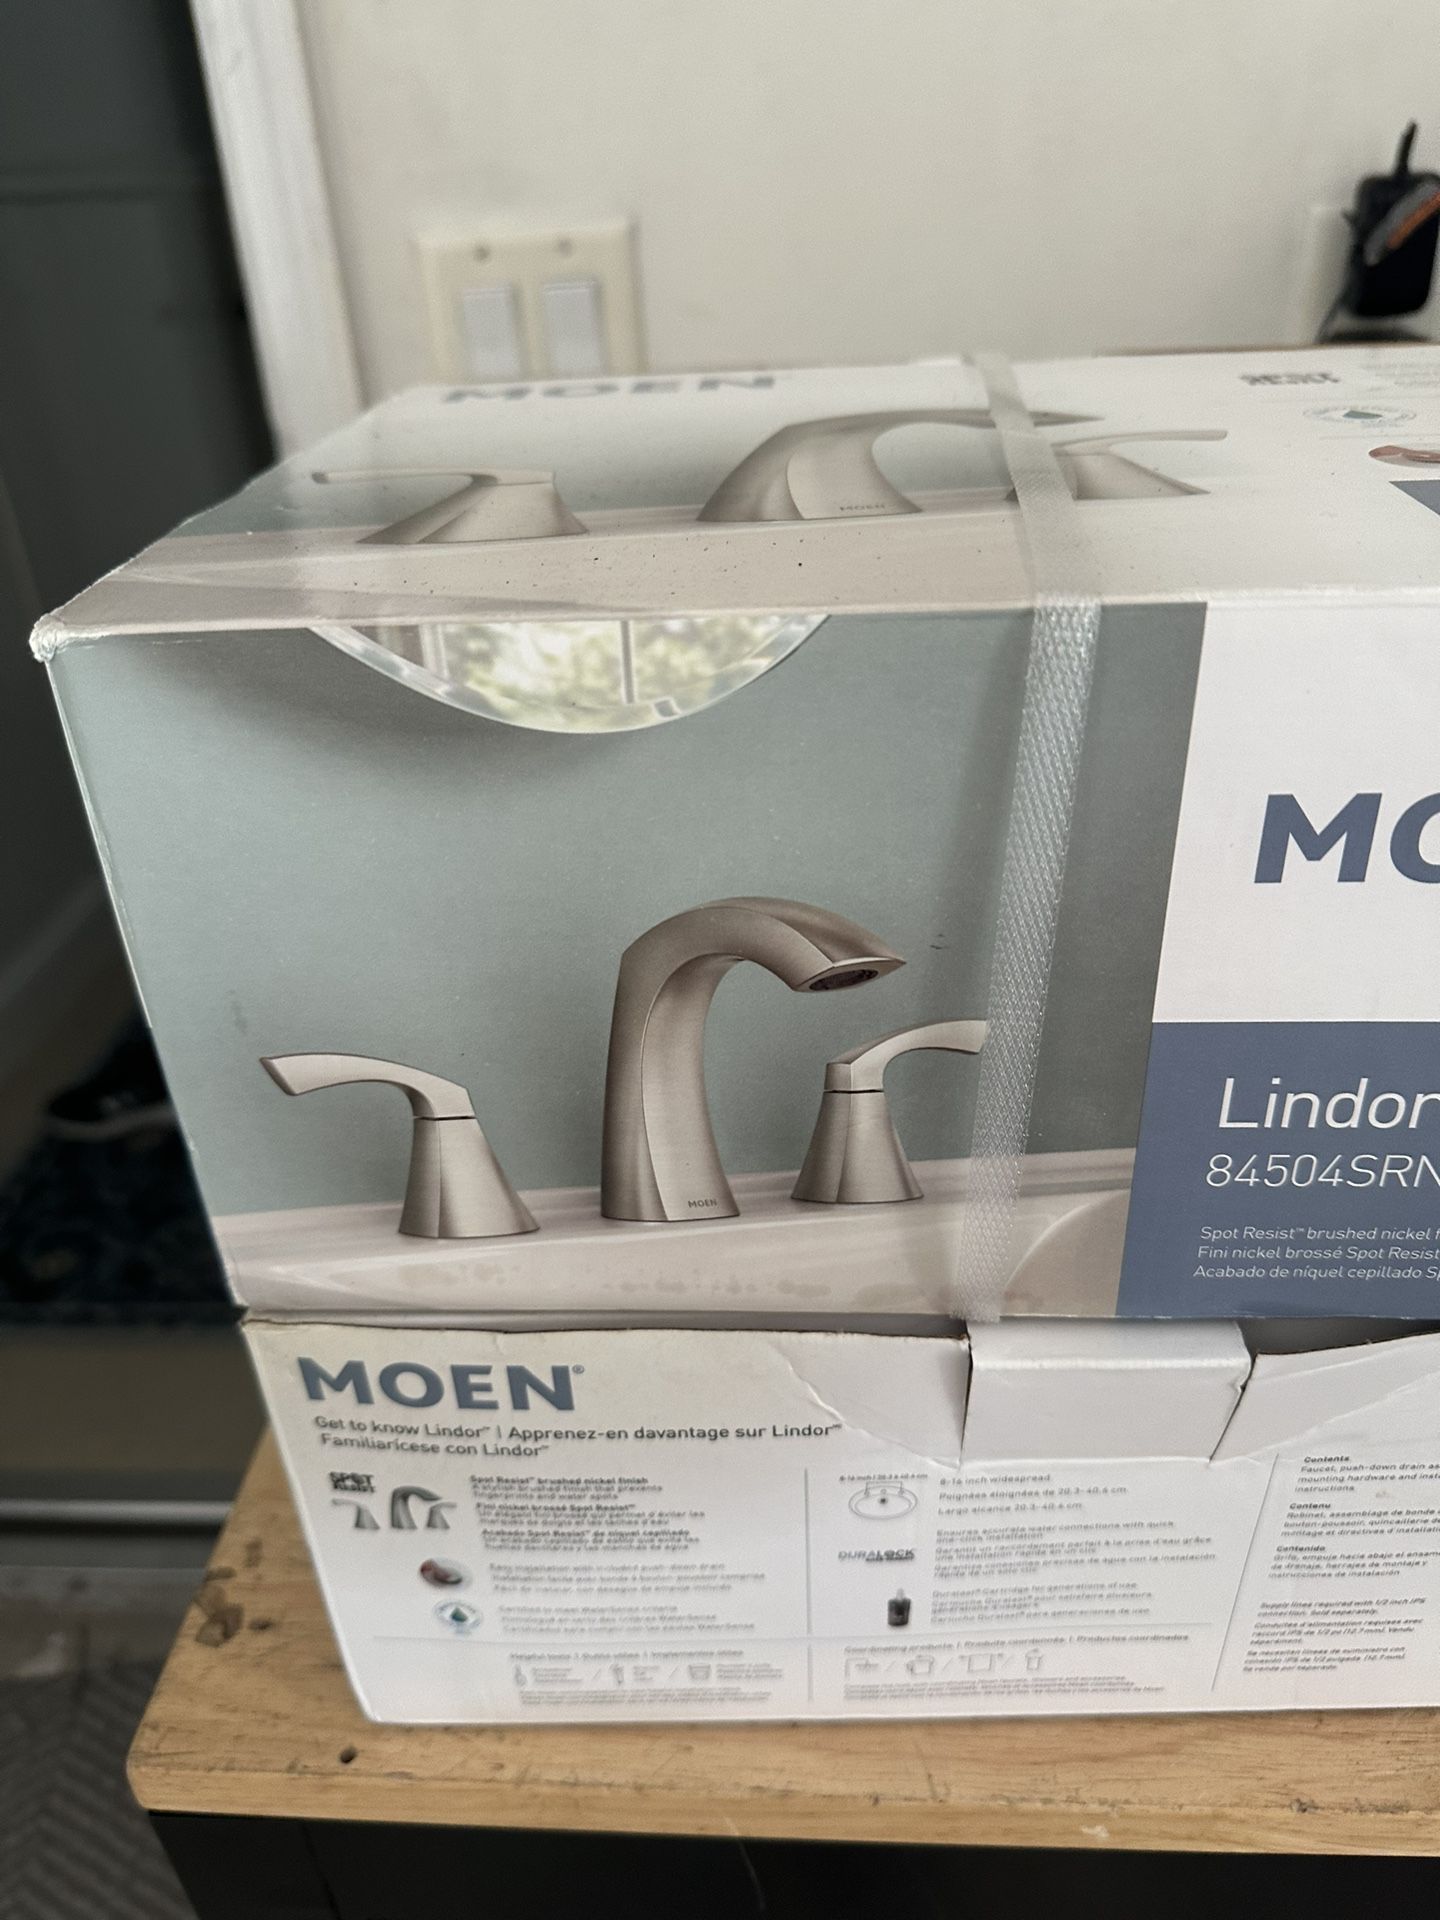 Brand new Moen Lindor 